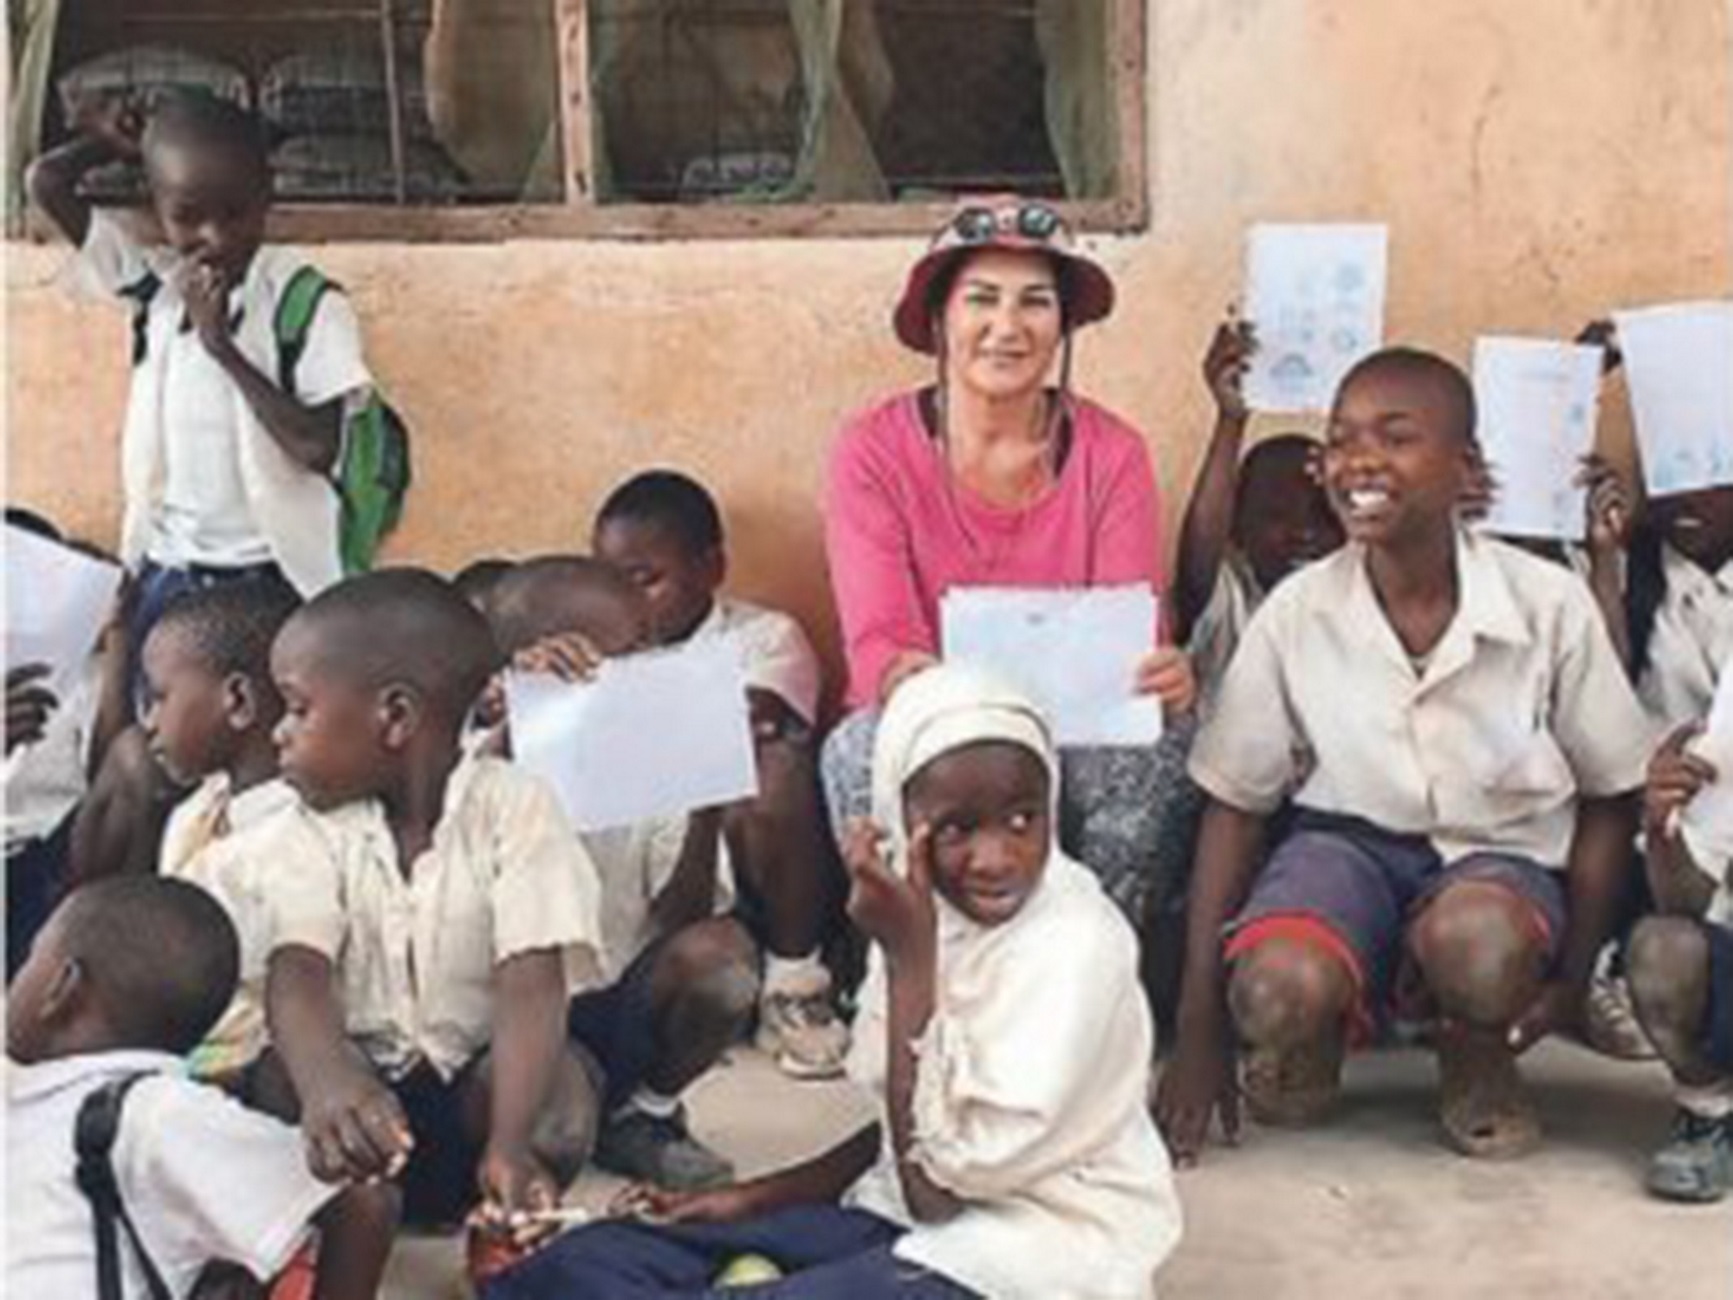 Λάρισα: Αυτή είναι η δασκάλα που υιοθέτησε ένα χωριό στην Τανζανία – Best seller το νέο βιβλίο της [pics]